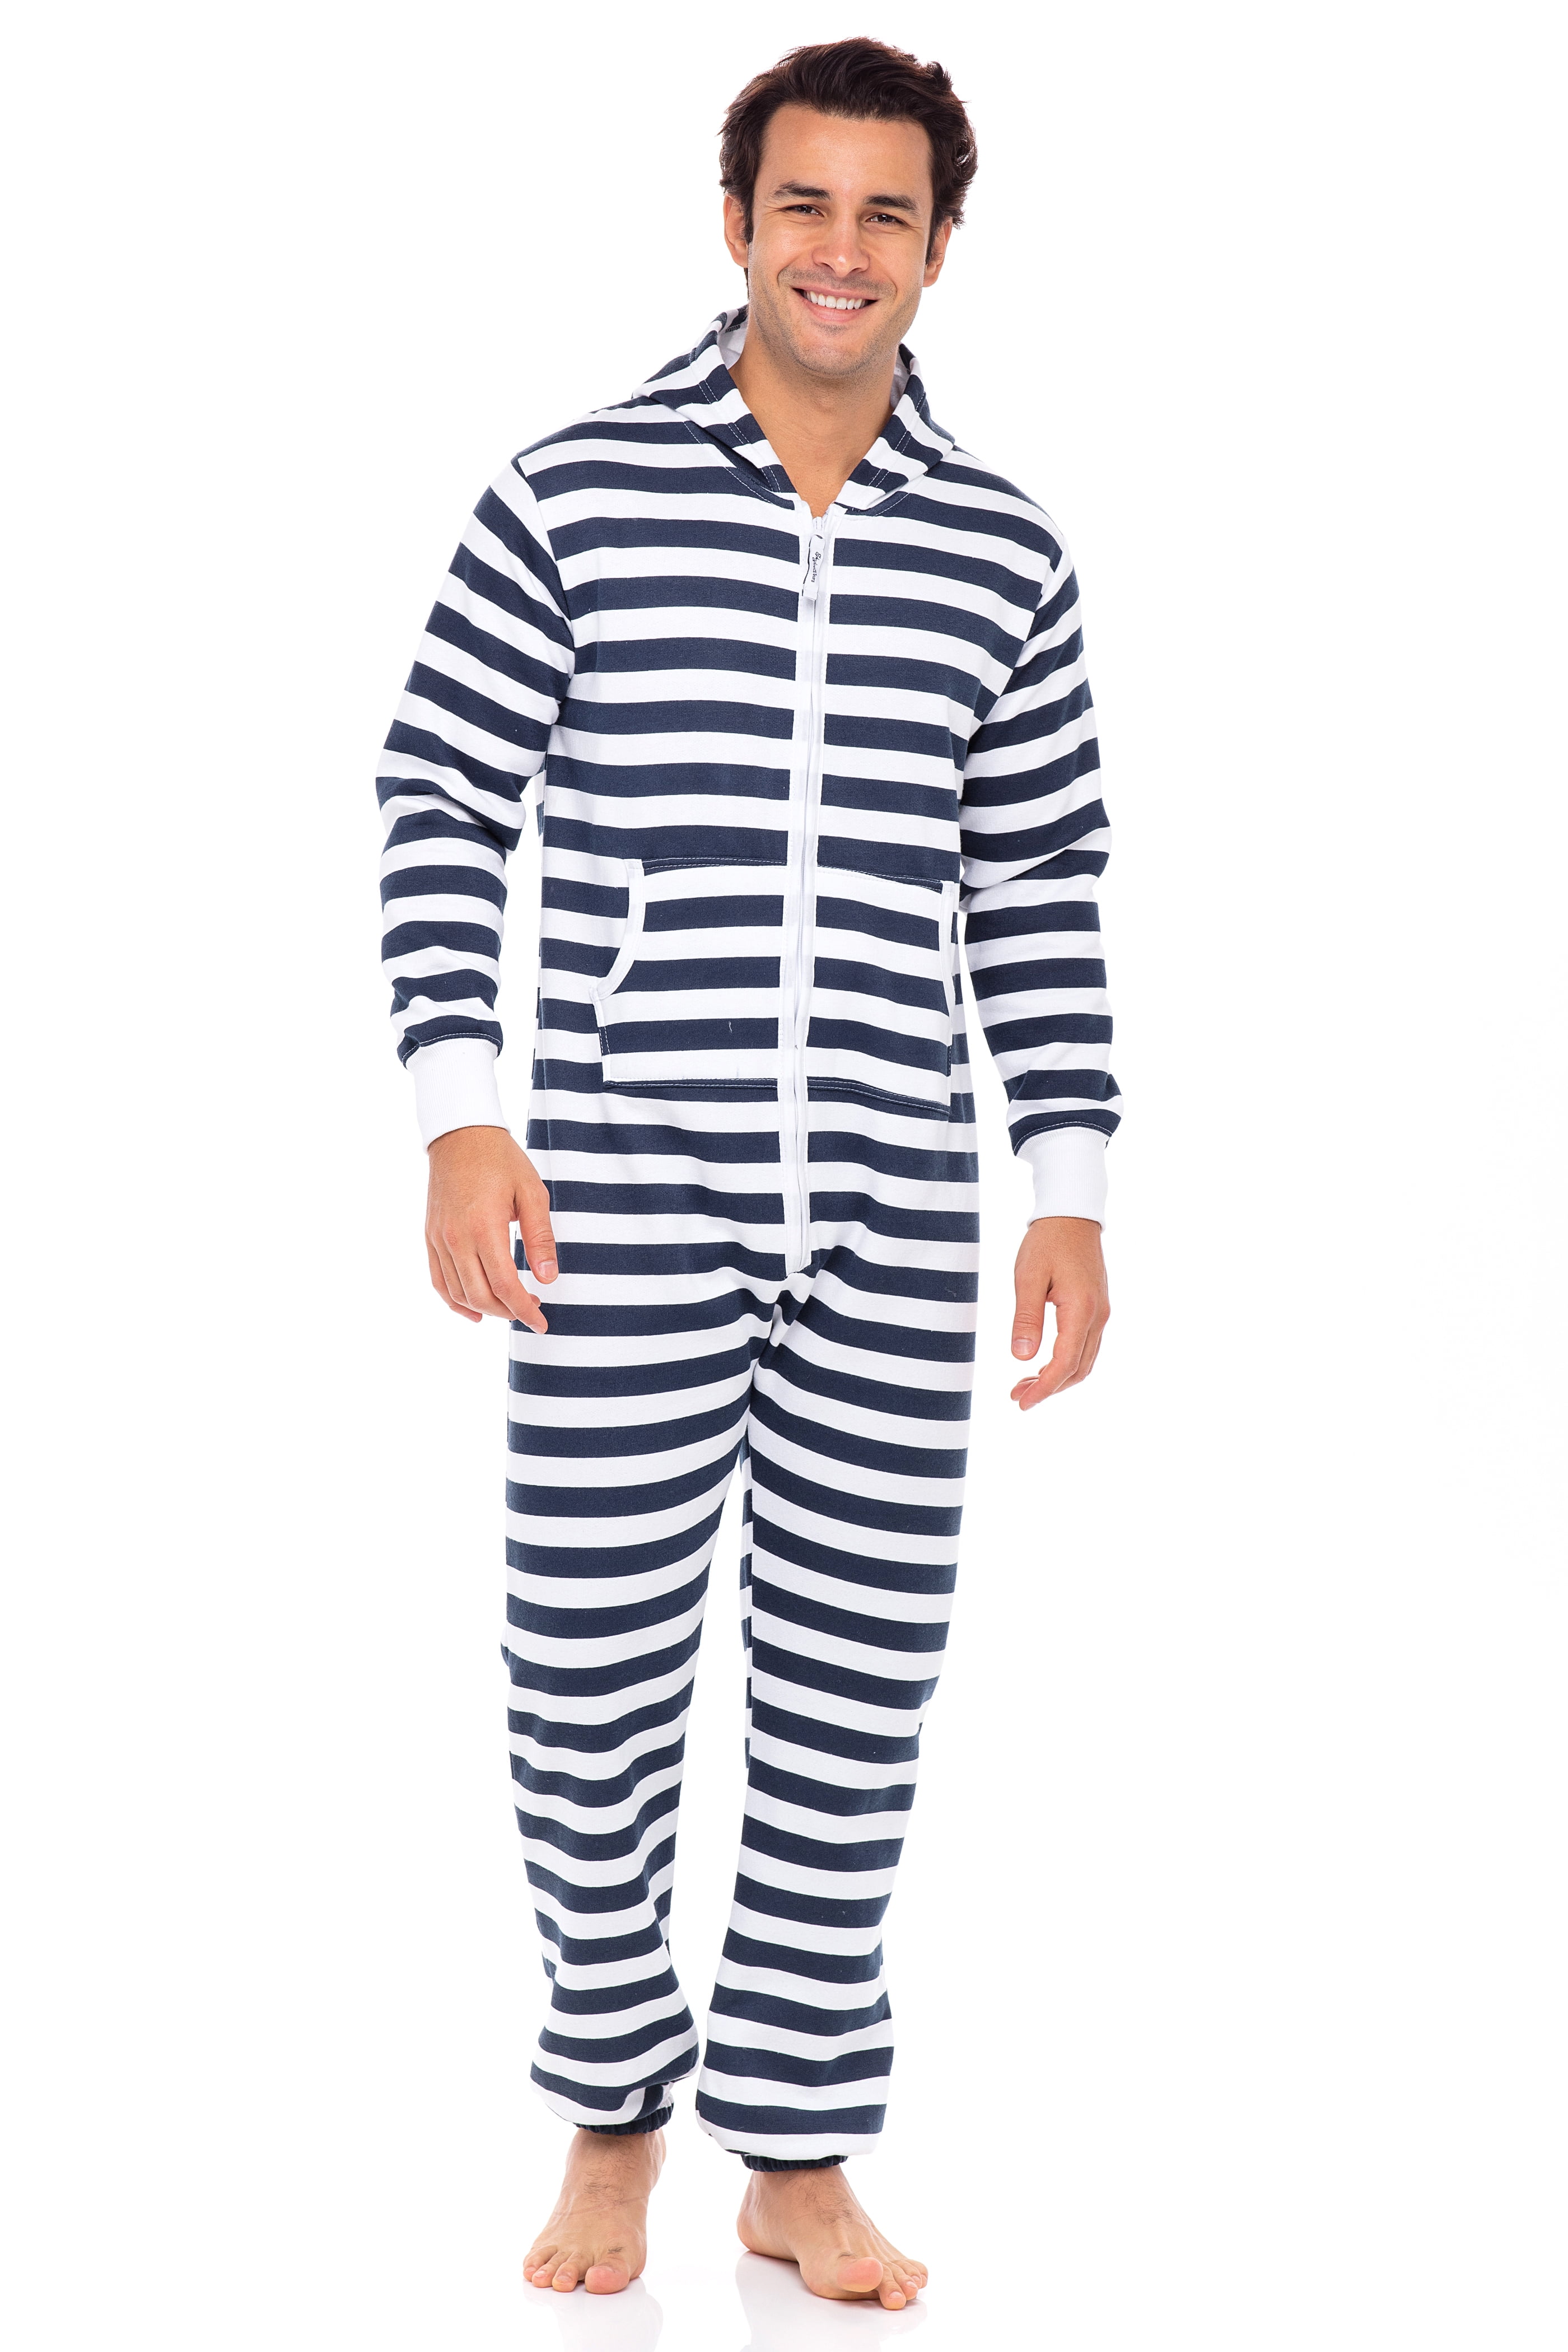 Skylinewears - Men's Sleepwear Boy Printed Playsuit Adult One Piece ...